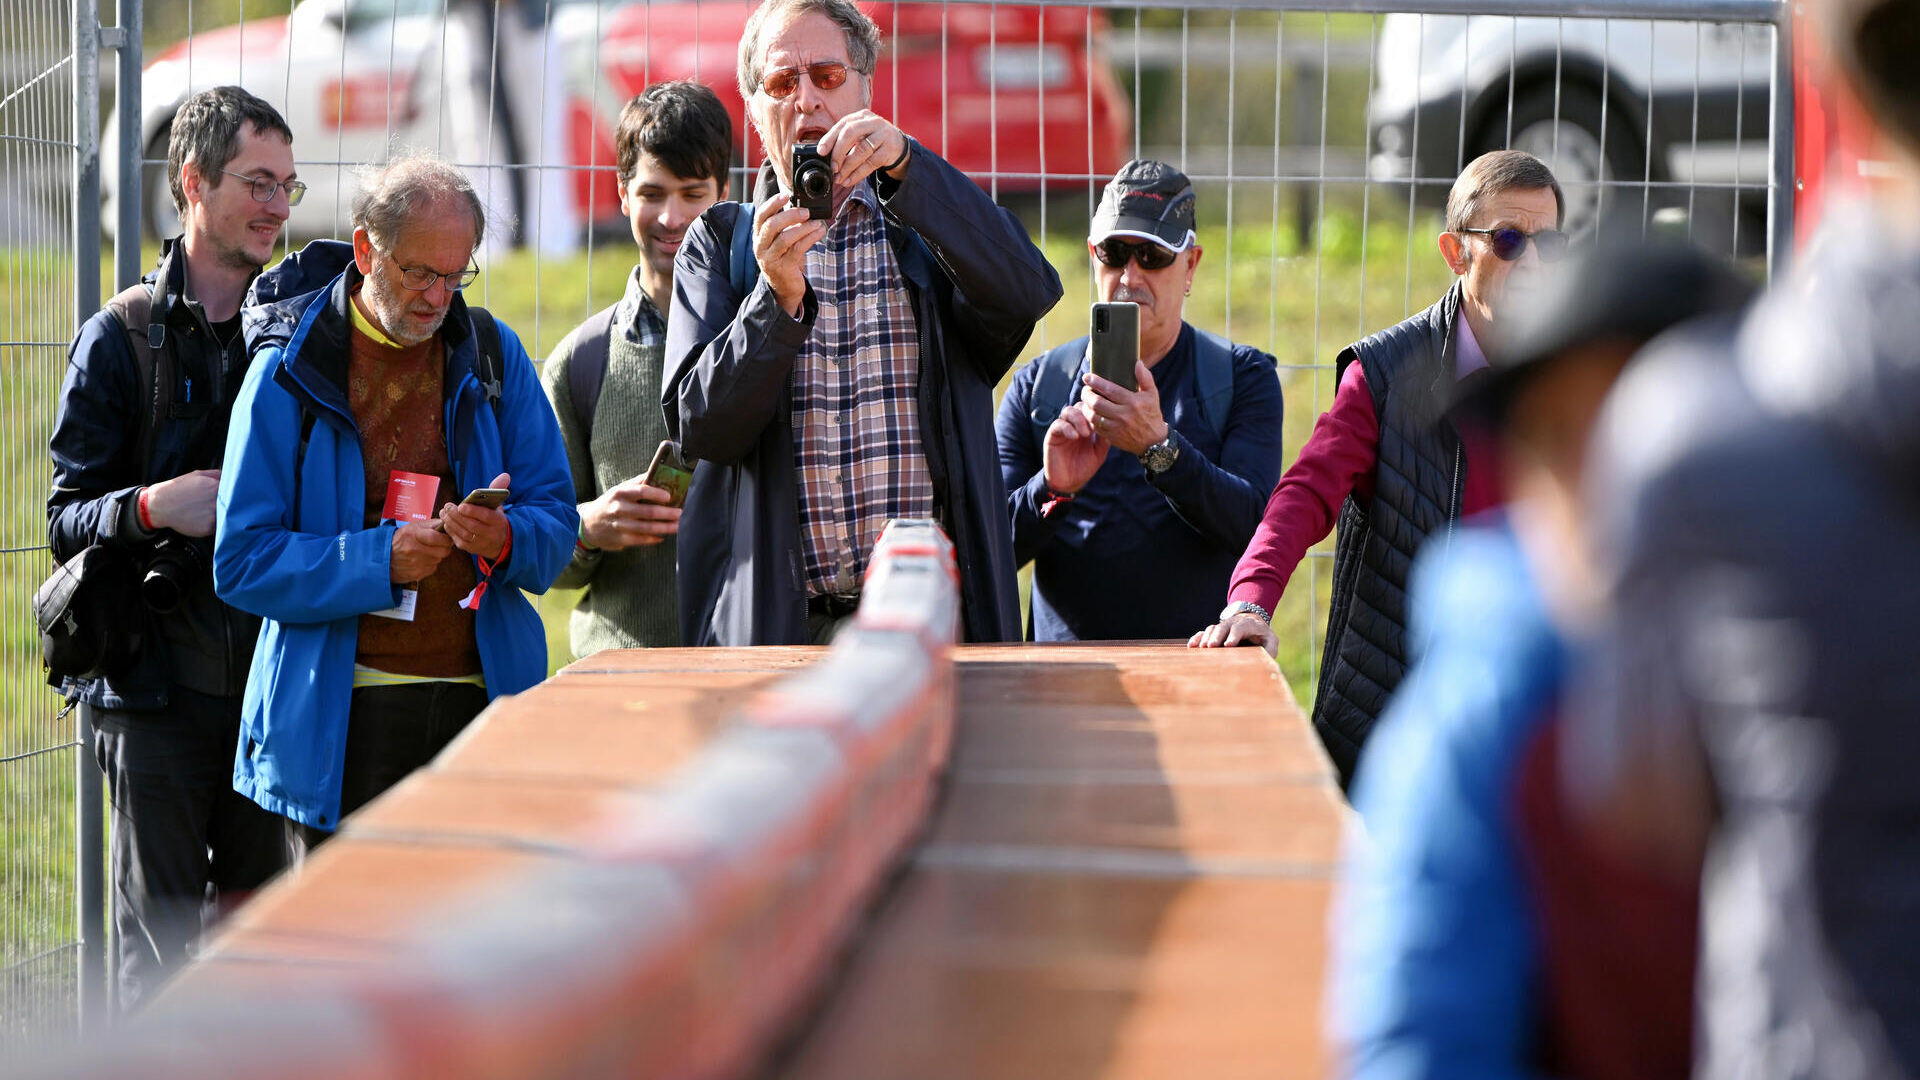 Мероприятия для публики Граубюндена во время рекорда самого длинного узкоколейного поезда в мире Ретийских железных дорог.